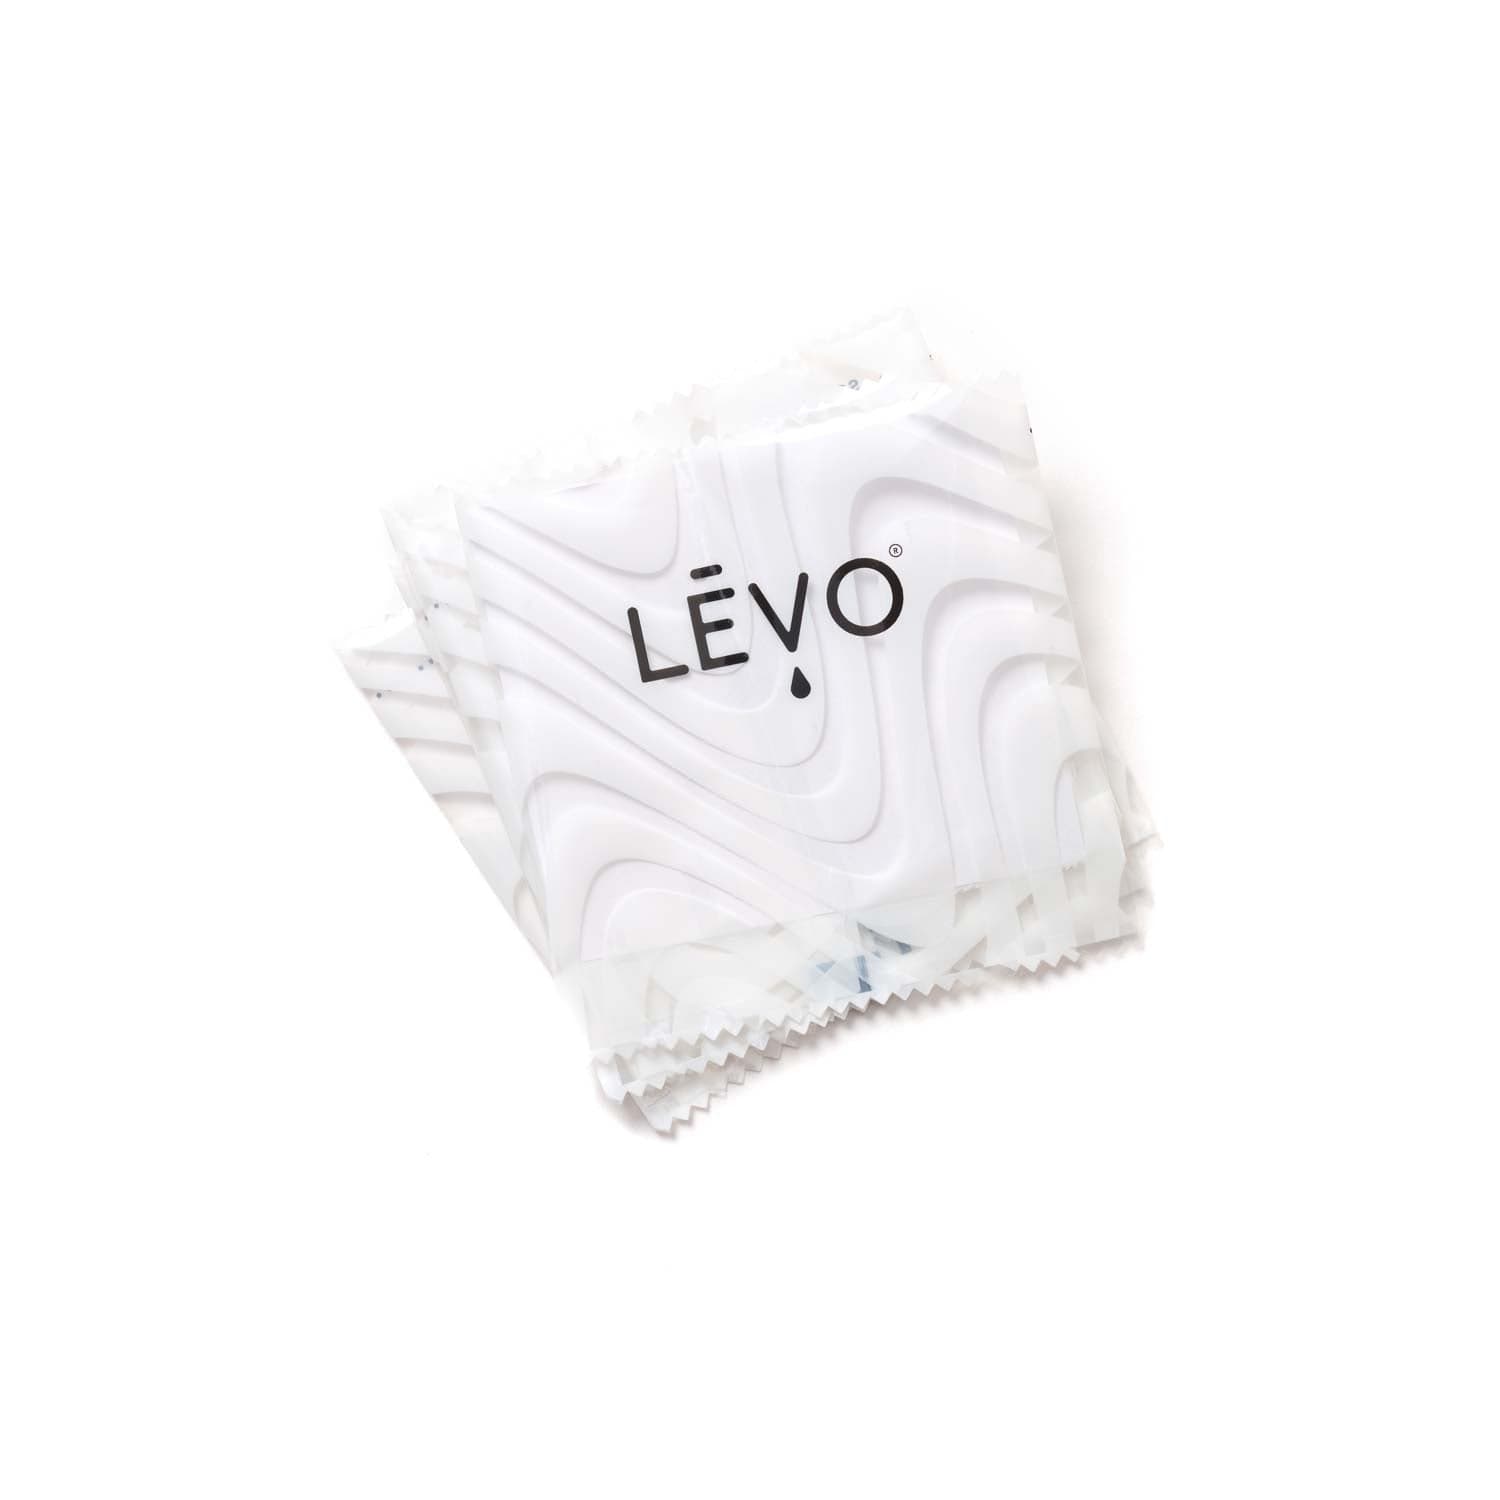 LEVO Small wrap refills in White